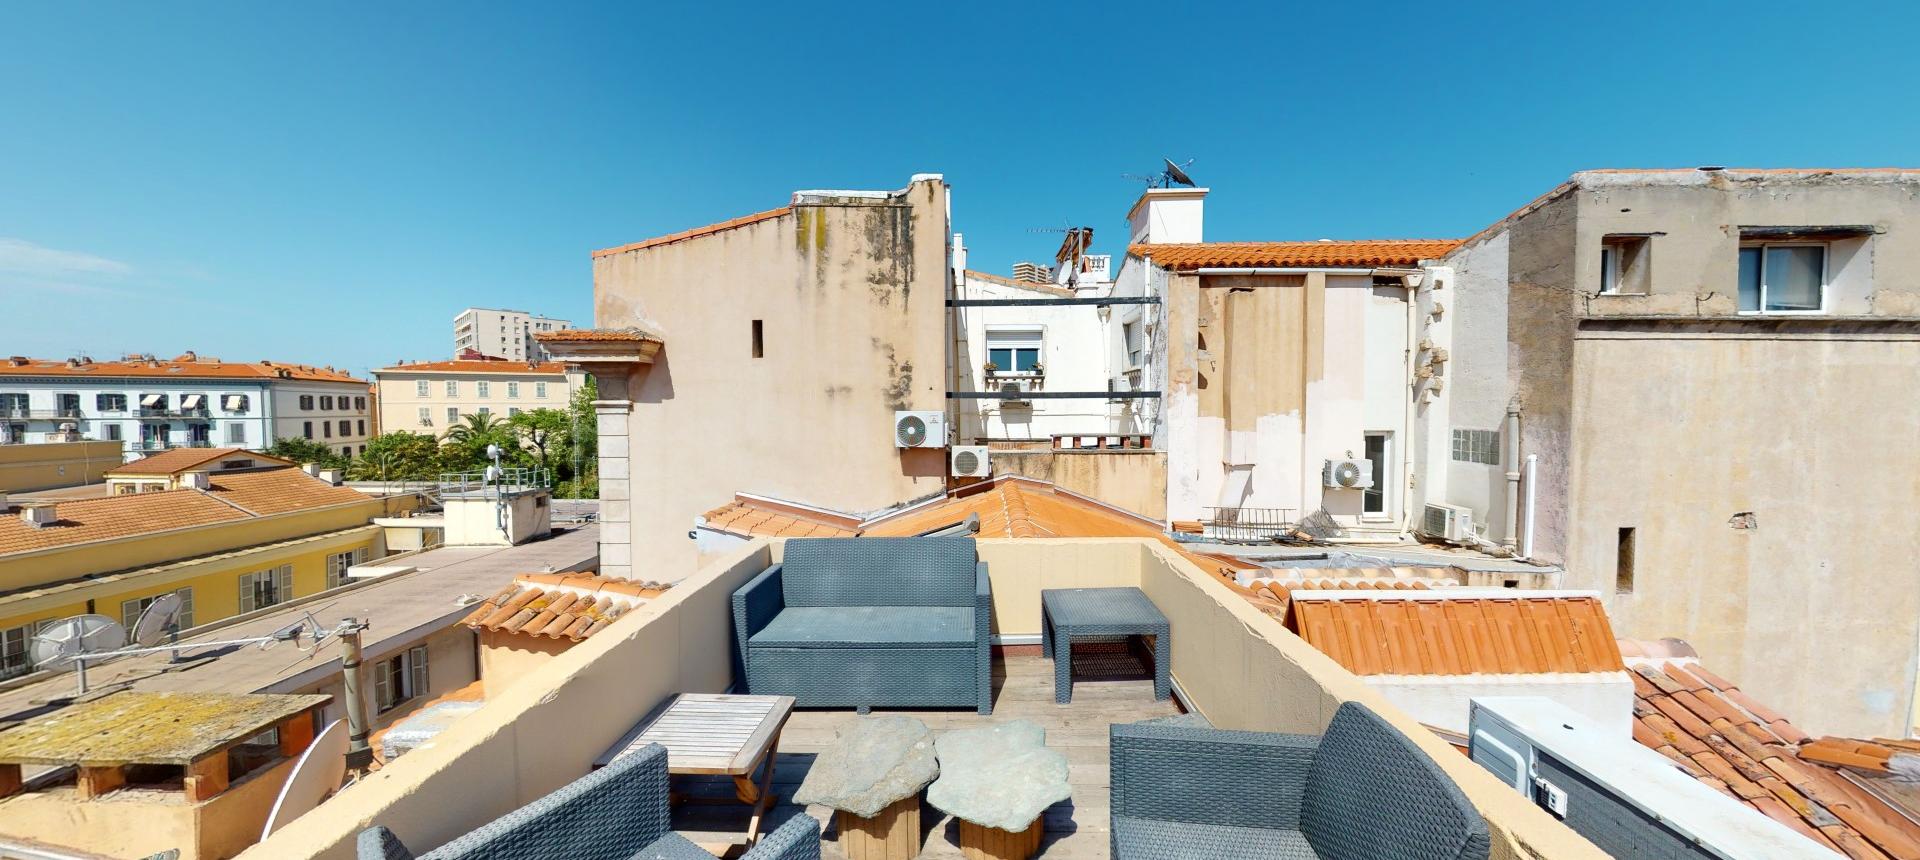 F4 toit terrasse à vendre Quartier de la préfecture Ajaccio